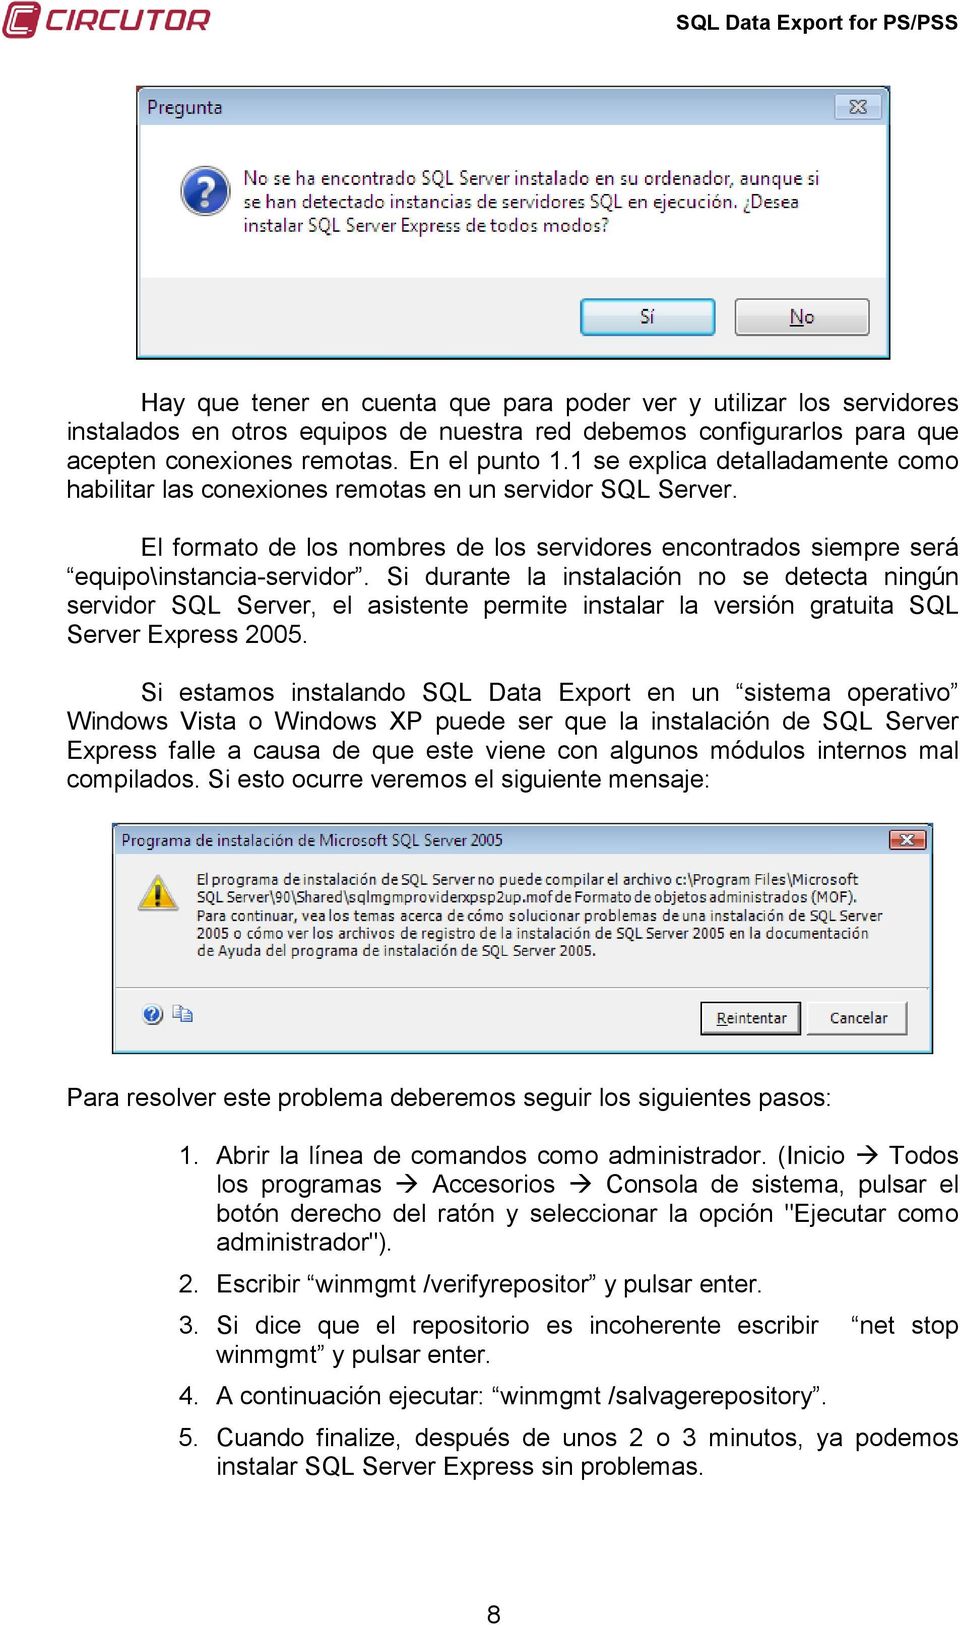 Si durante la instalación no se detecta ningún servidor SQL Server, el asistente permite instalar la versión gratuita SQL Server Express 2005.